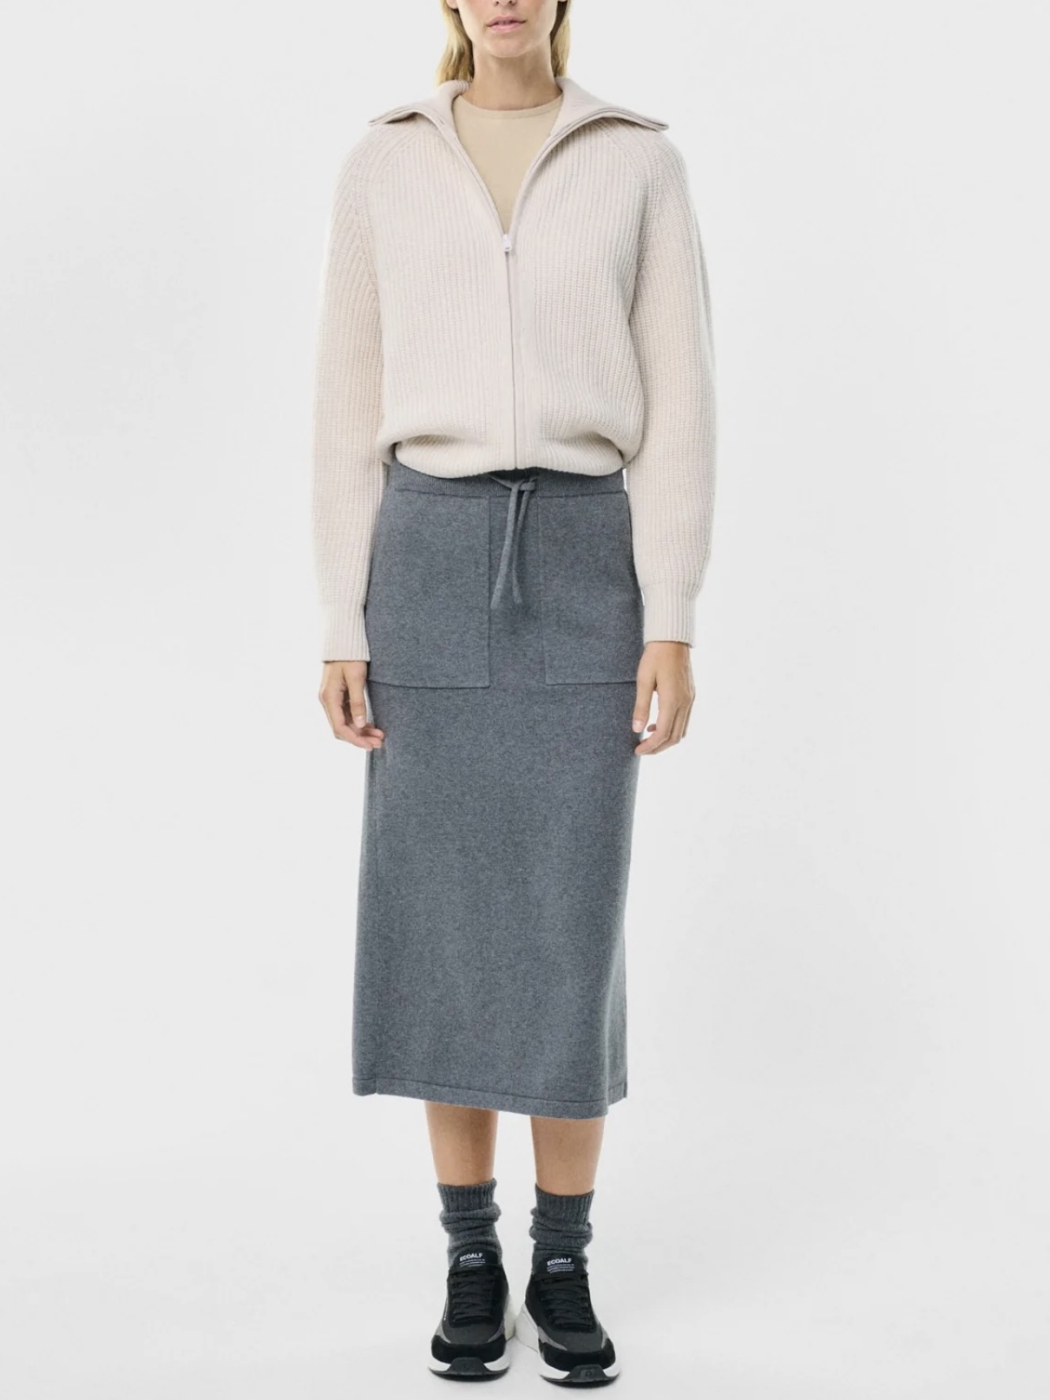 ECOALF falda en lana color gris oscuro